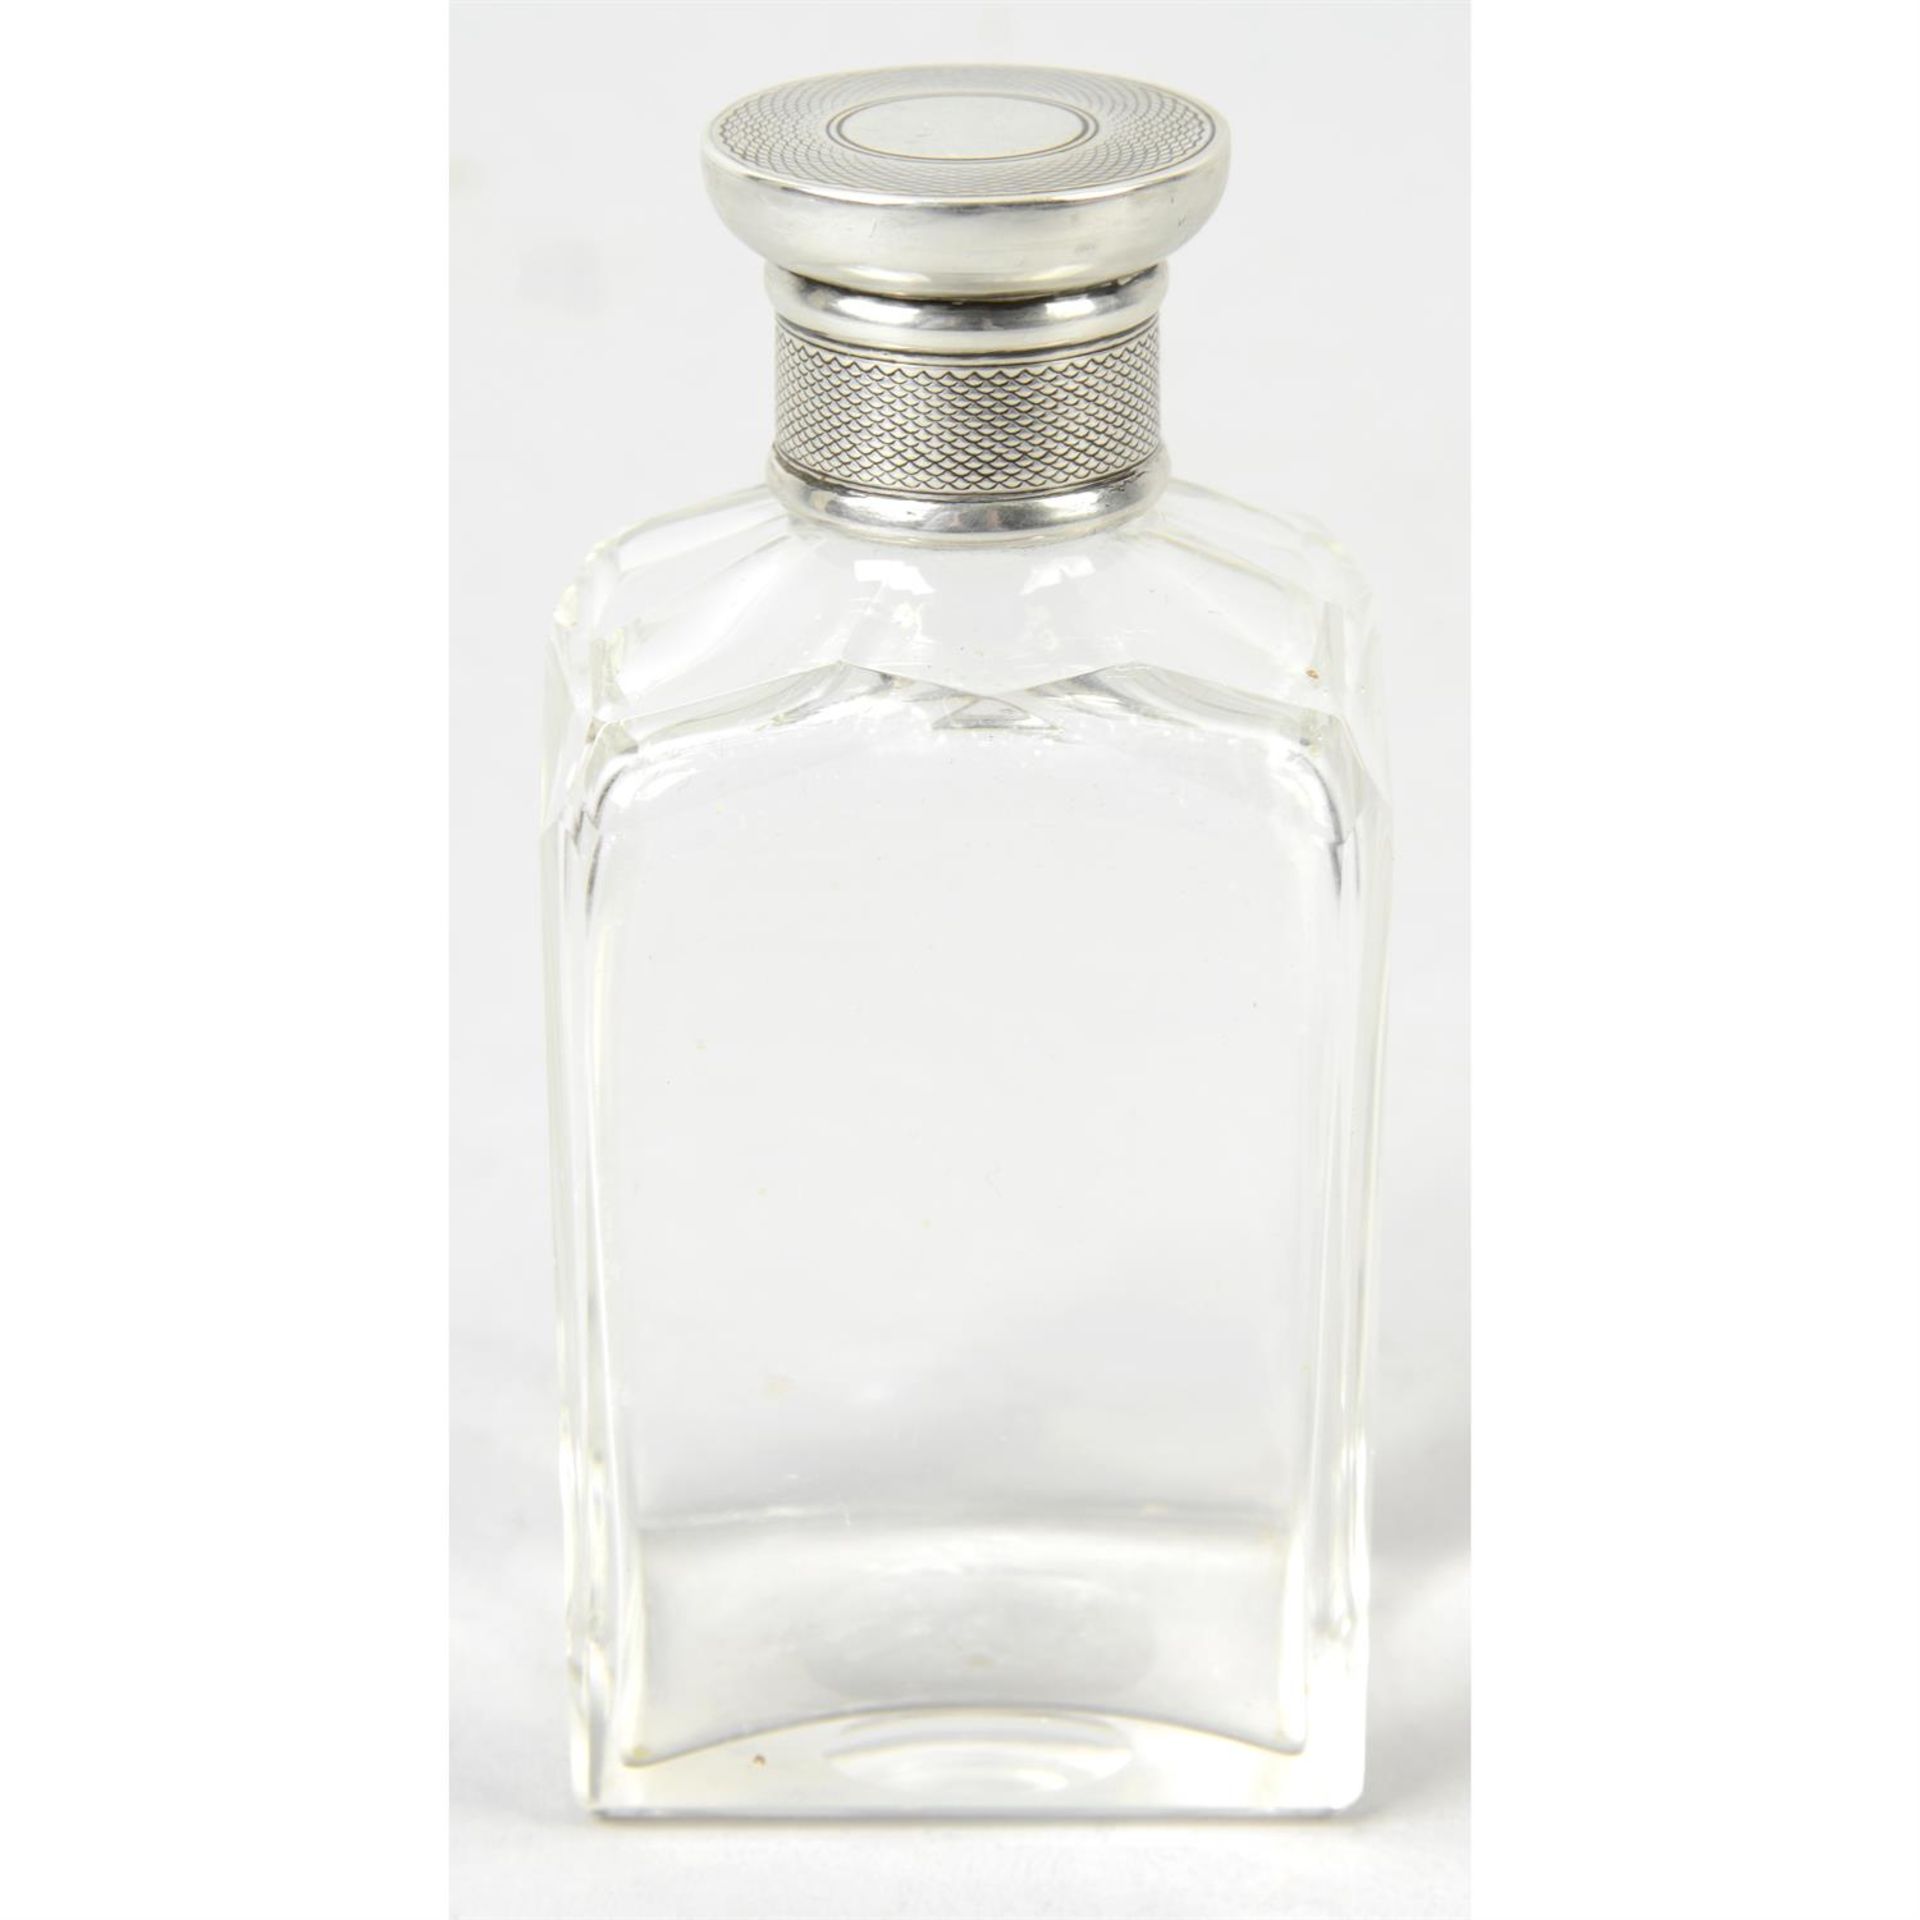 A gentleman's Edwardian clear glass rectangular scent bottle.